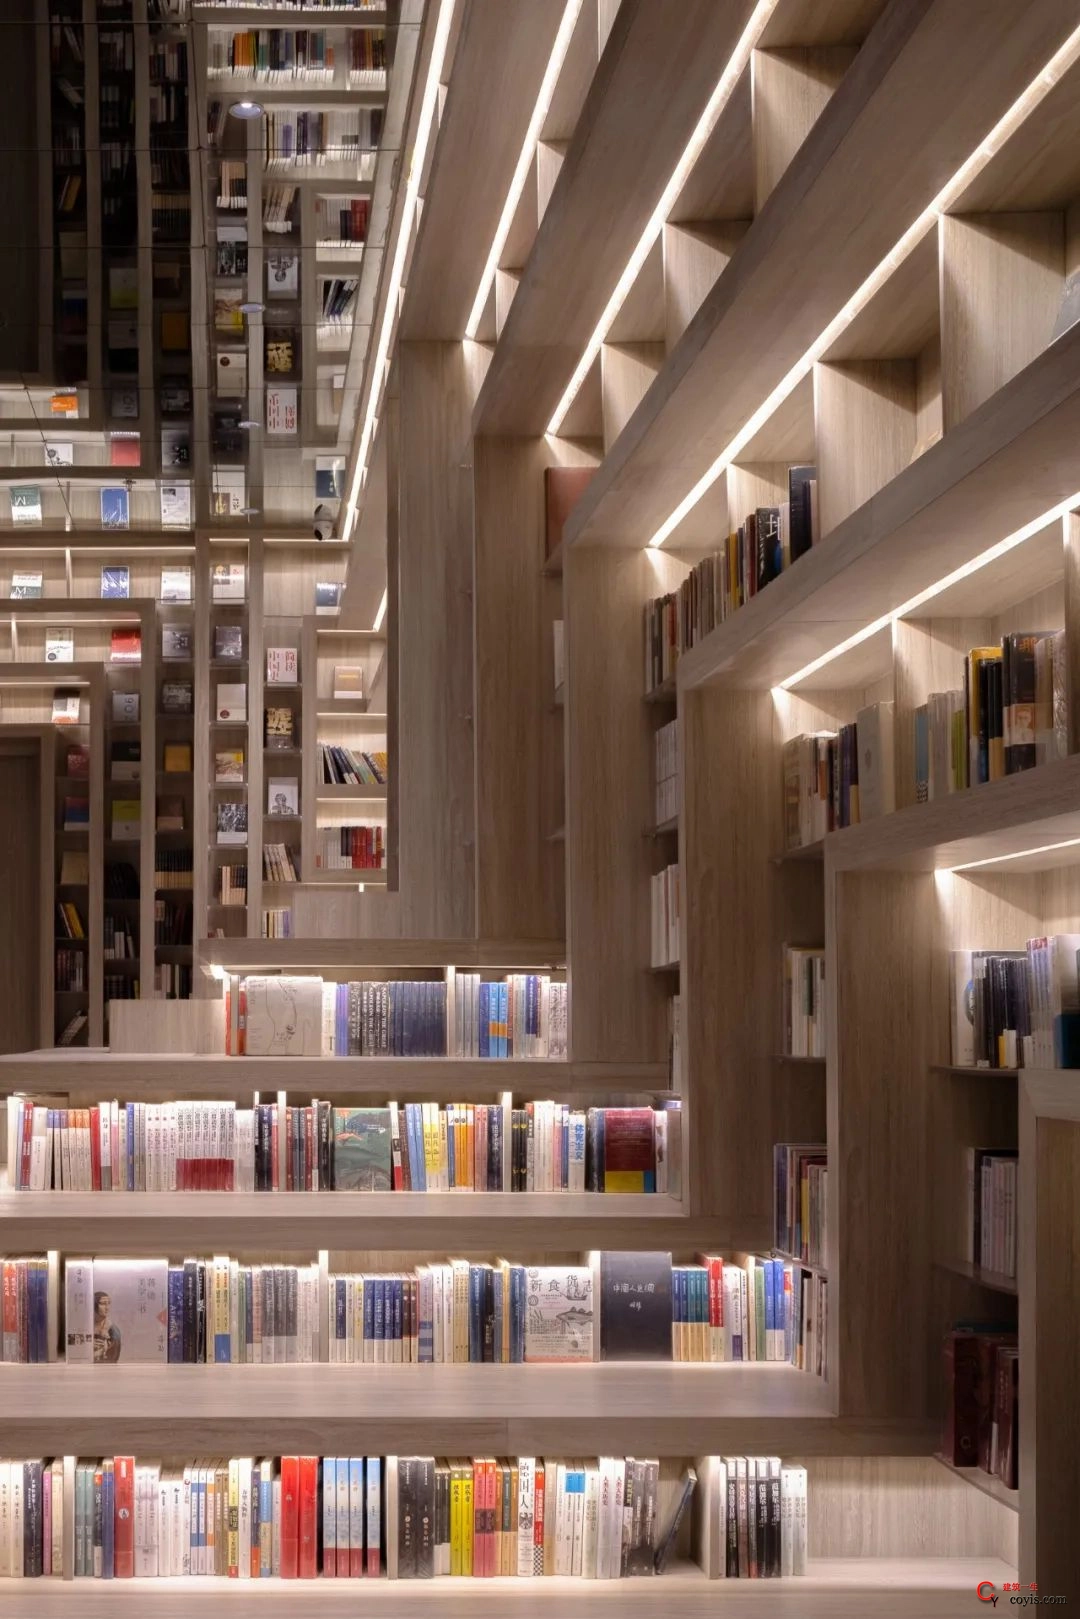 斐波影院X鐘書閣丨一家藏在書店里的電影院，打造出了文藝愛好者的天堂 / 唯想國際